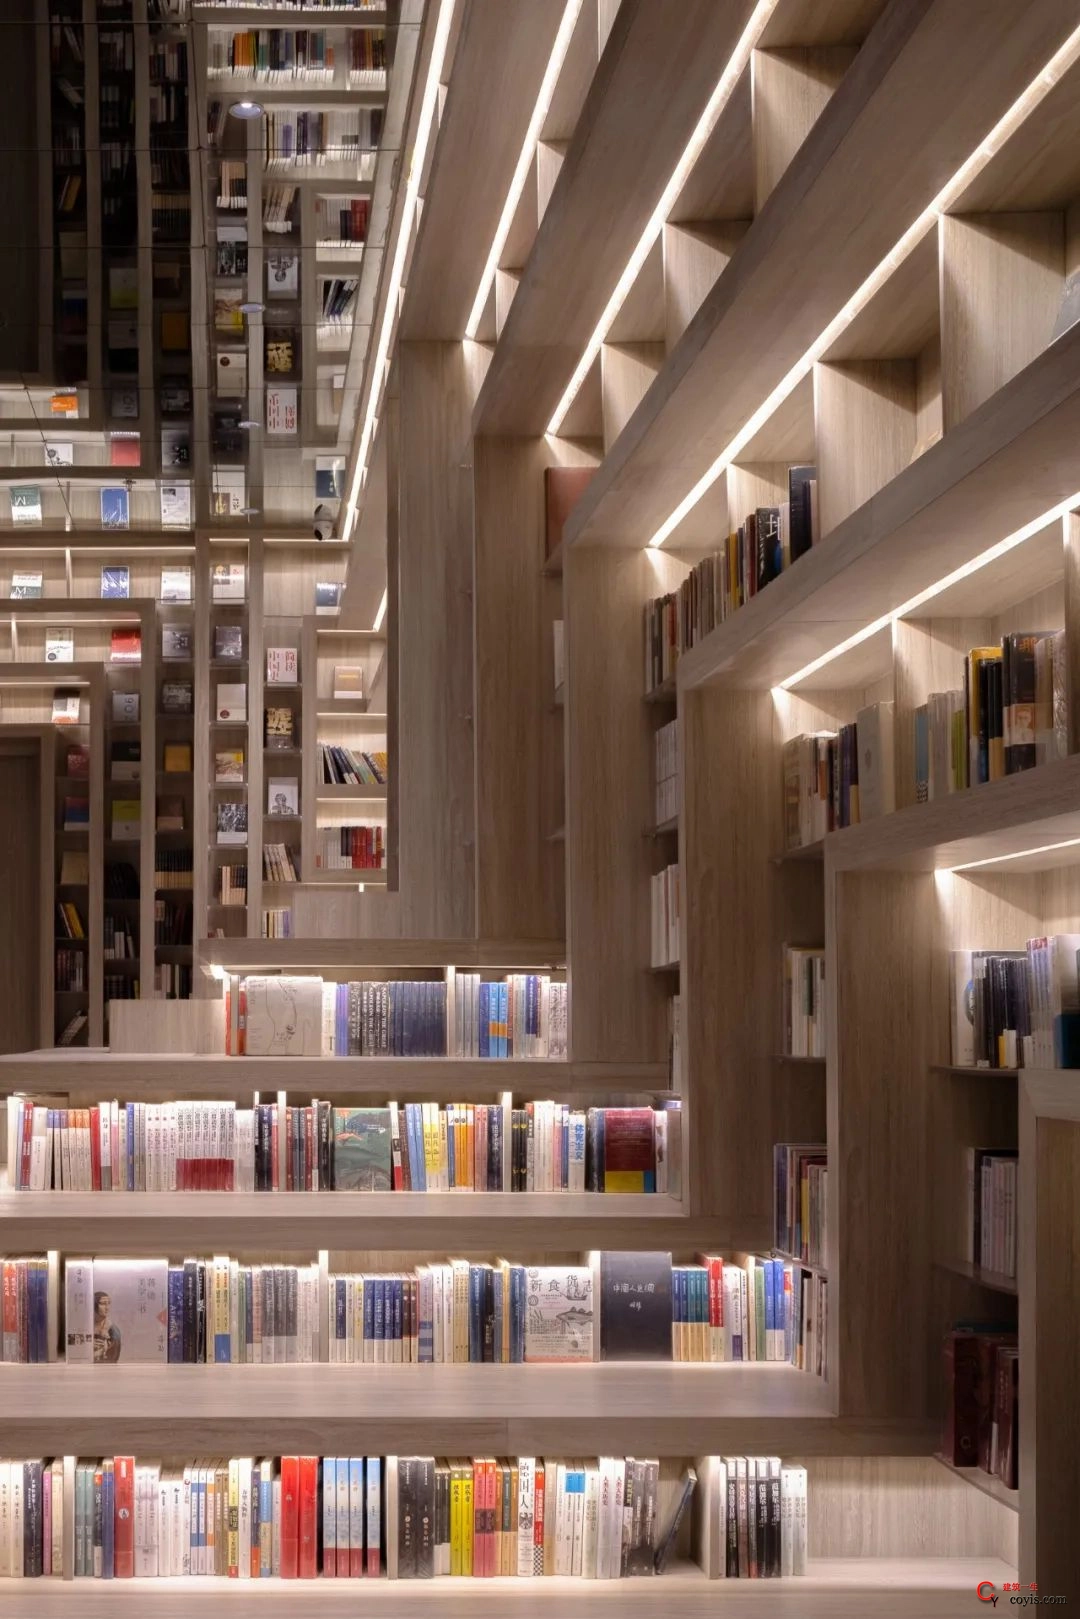 斐波影院X鐘書閣丨一家藏在書店里的電影院，打造出了文藝愛好者的天堂 / 唯想國際